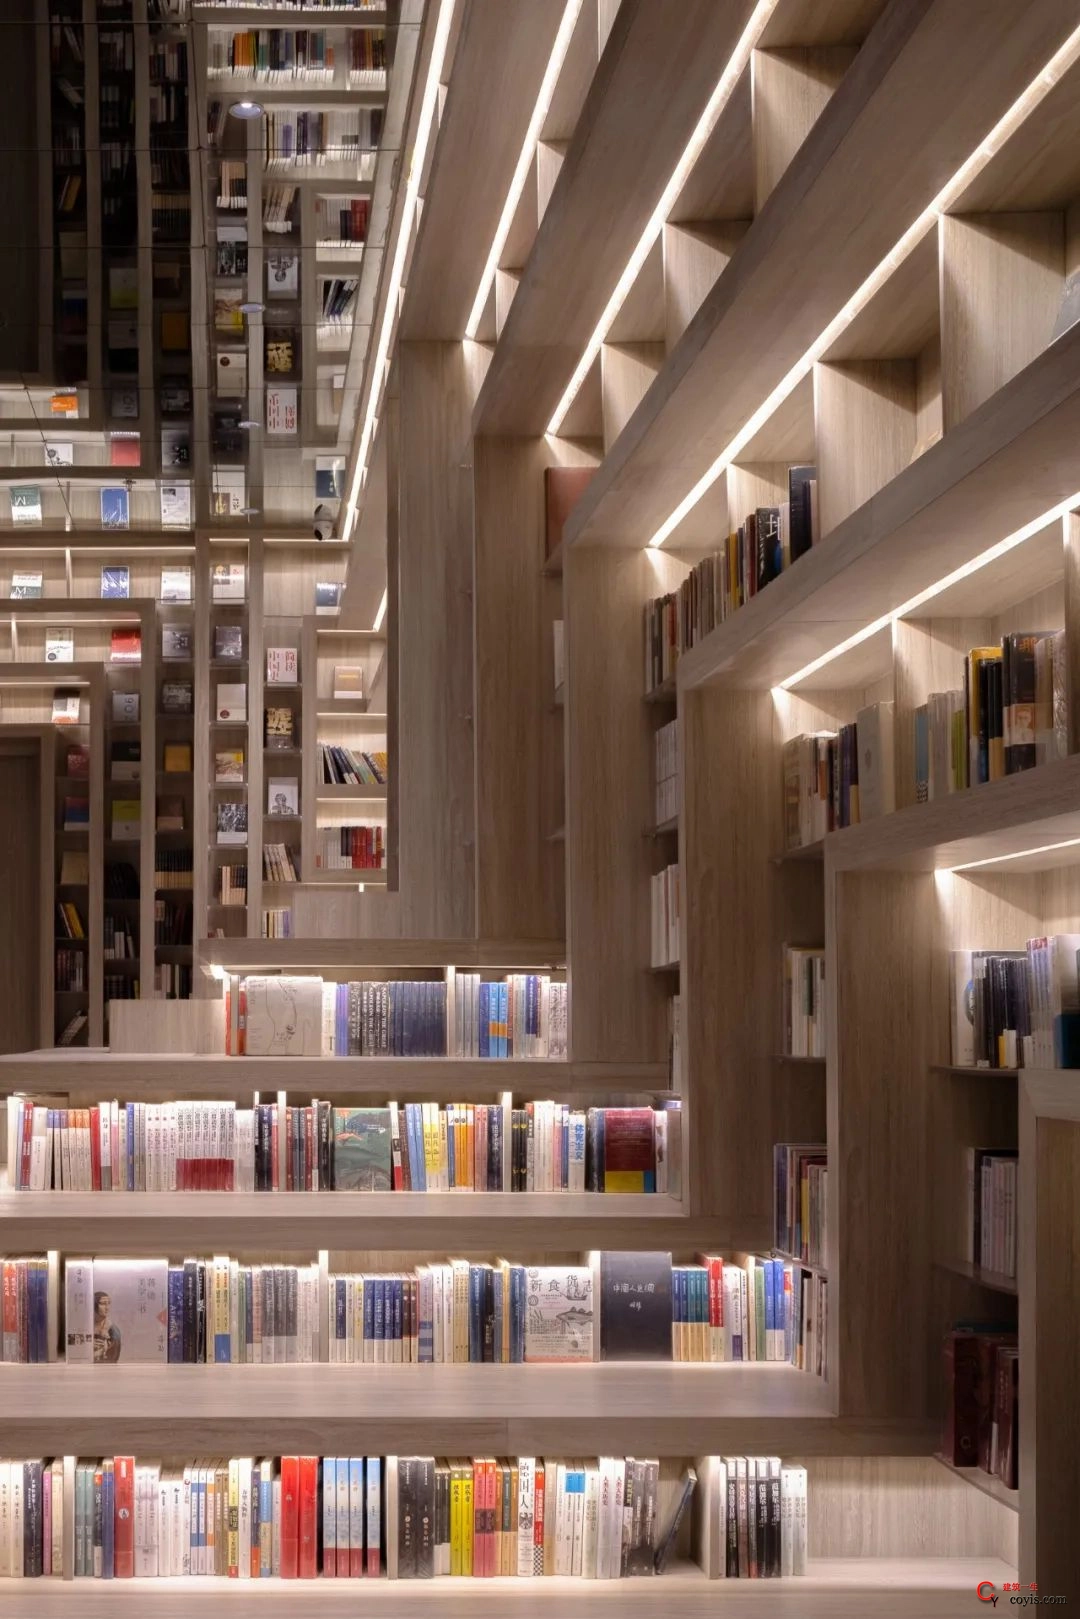 斐波影院X鐘書閣丨一家藏在書店里的電影院，打造出了文藝愛好者的天堂 / 唯想國際